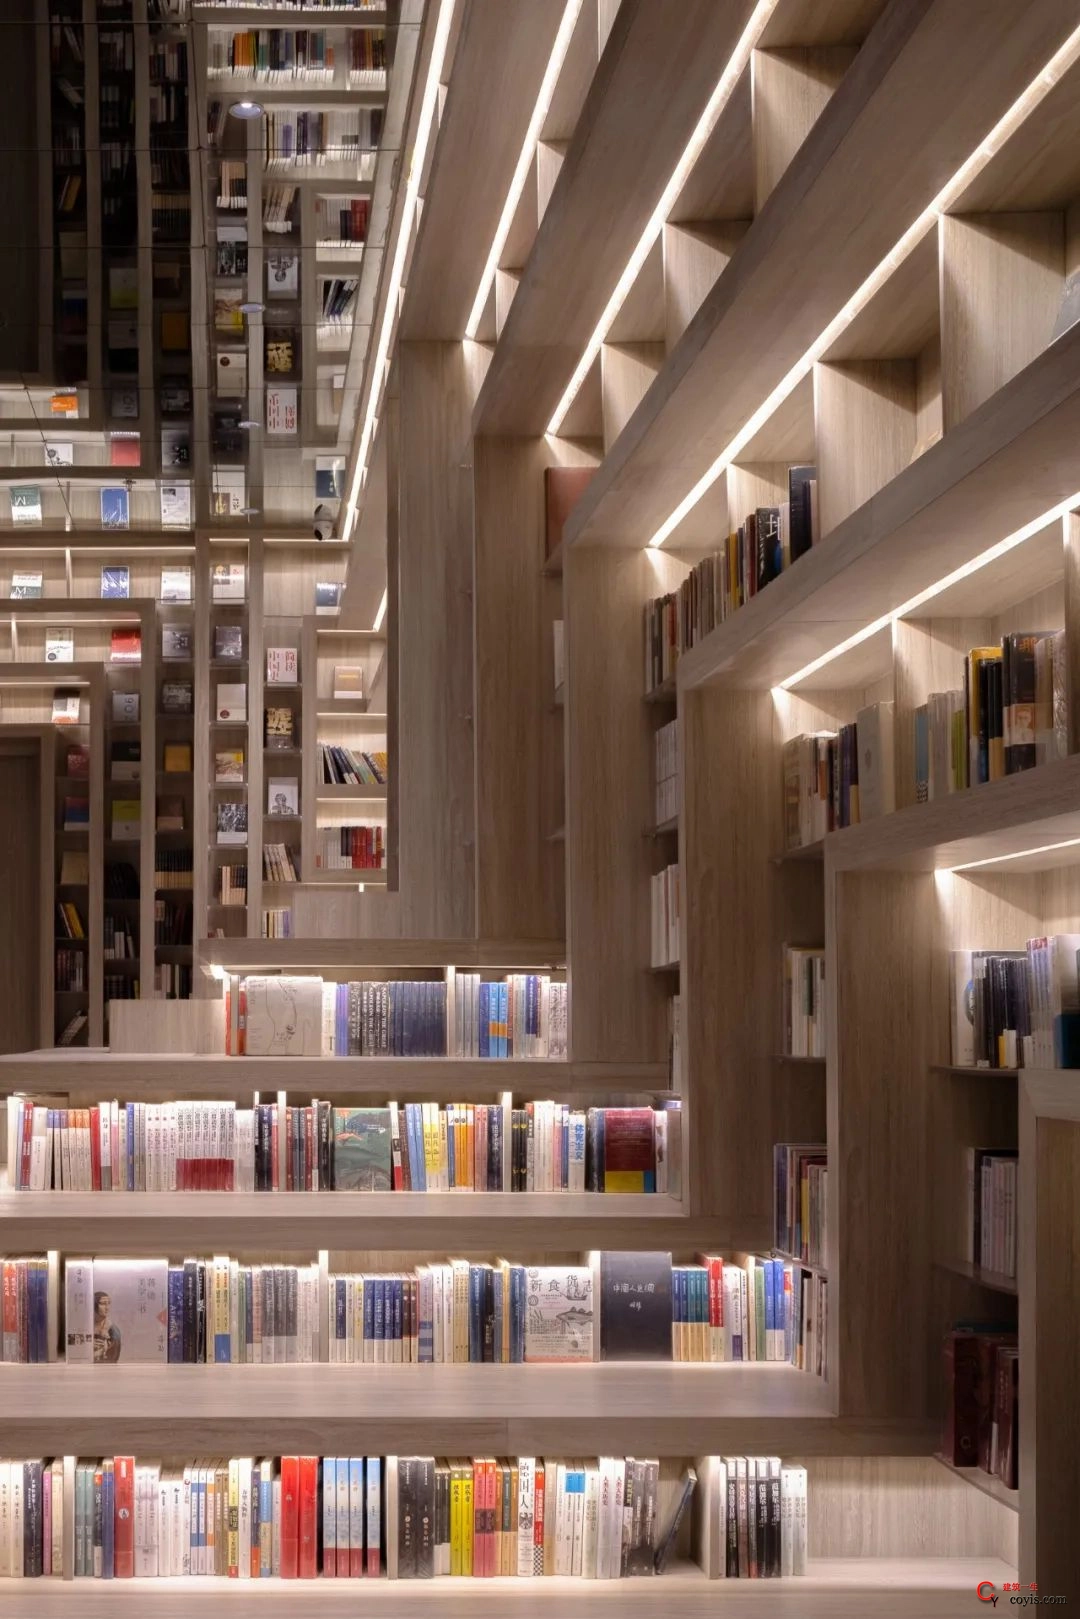 斐波影院X鐘書閣丨一家藏在書店里的電影院，打造出了文藝愛好者的天堂 / 唯想國際